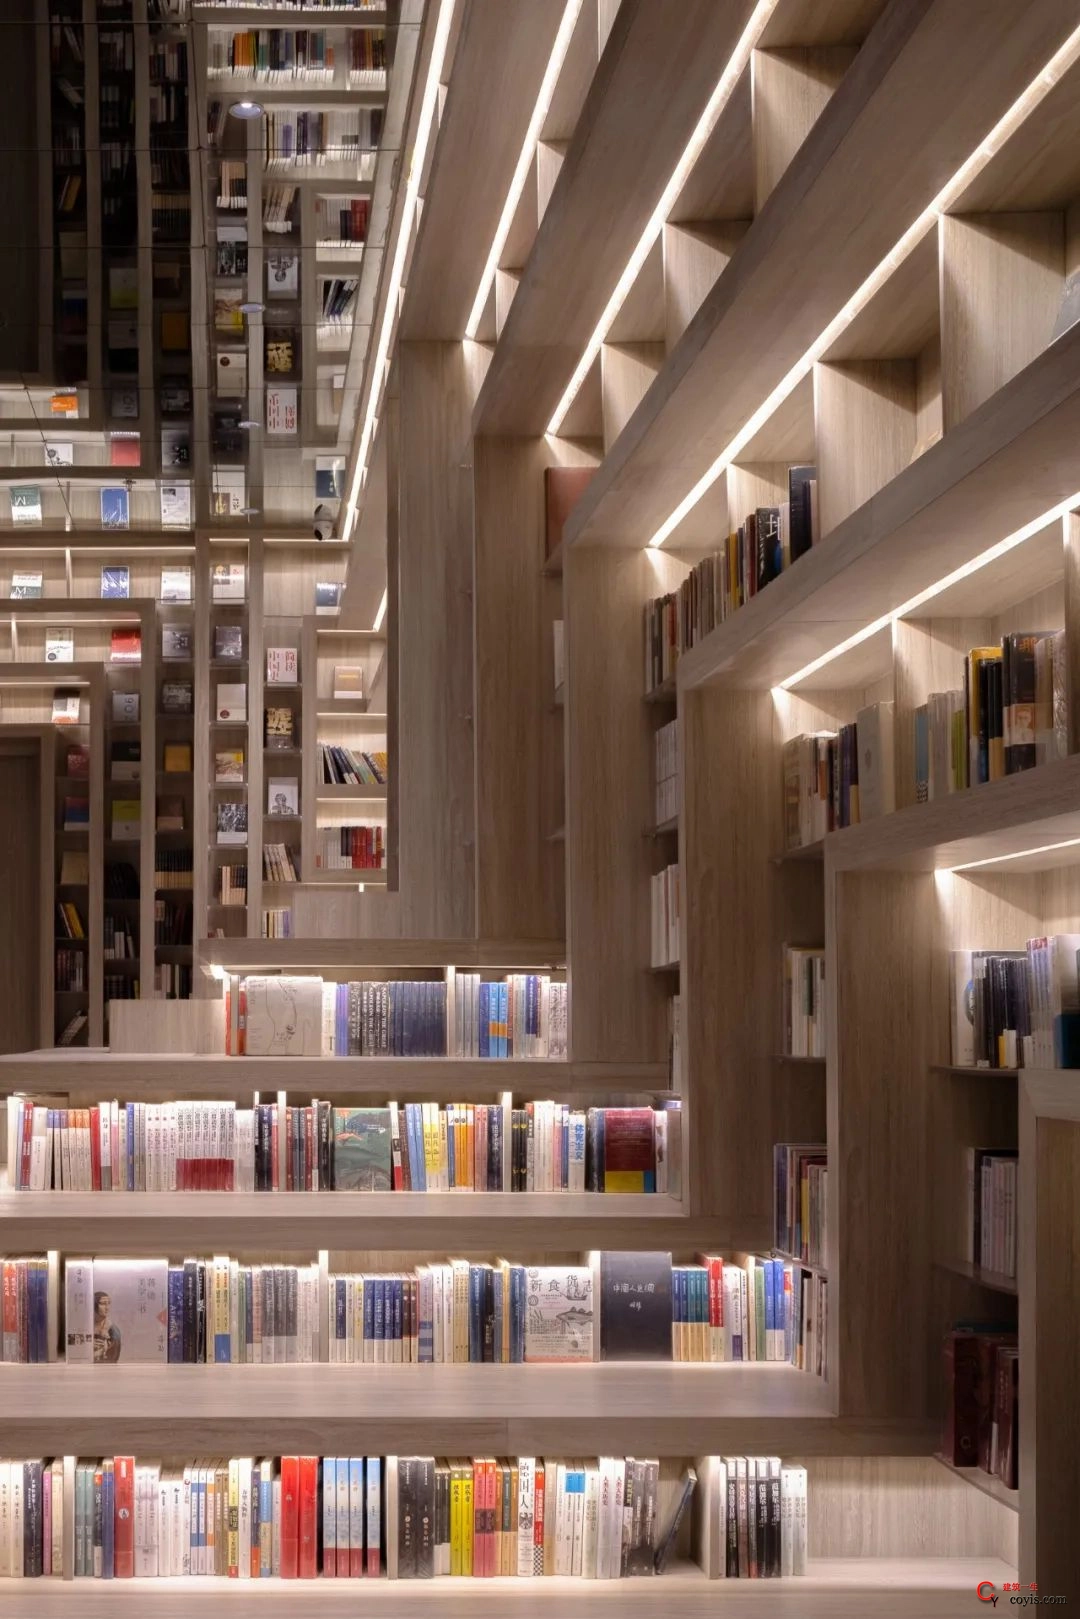 斐波影院X鐘書閣丨一家藏在書店里的電影院，打造出了文藝愛好者的天堂 / 唯想國際